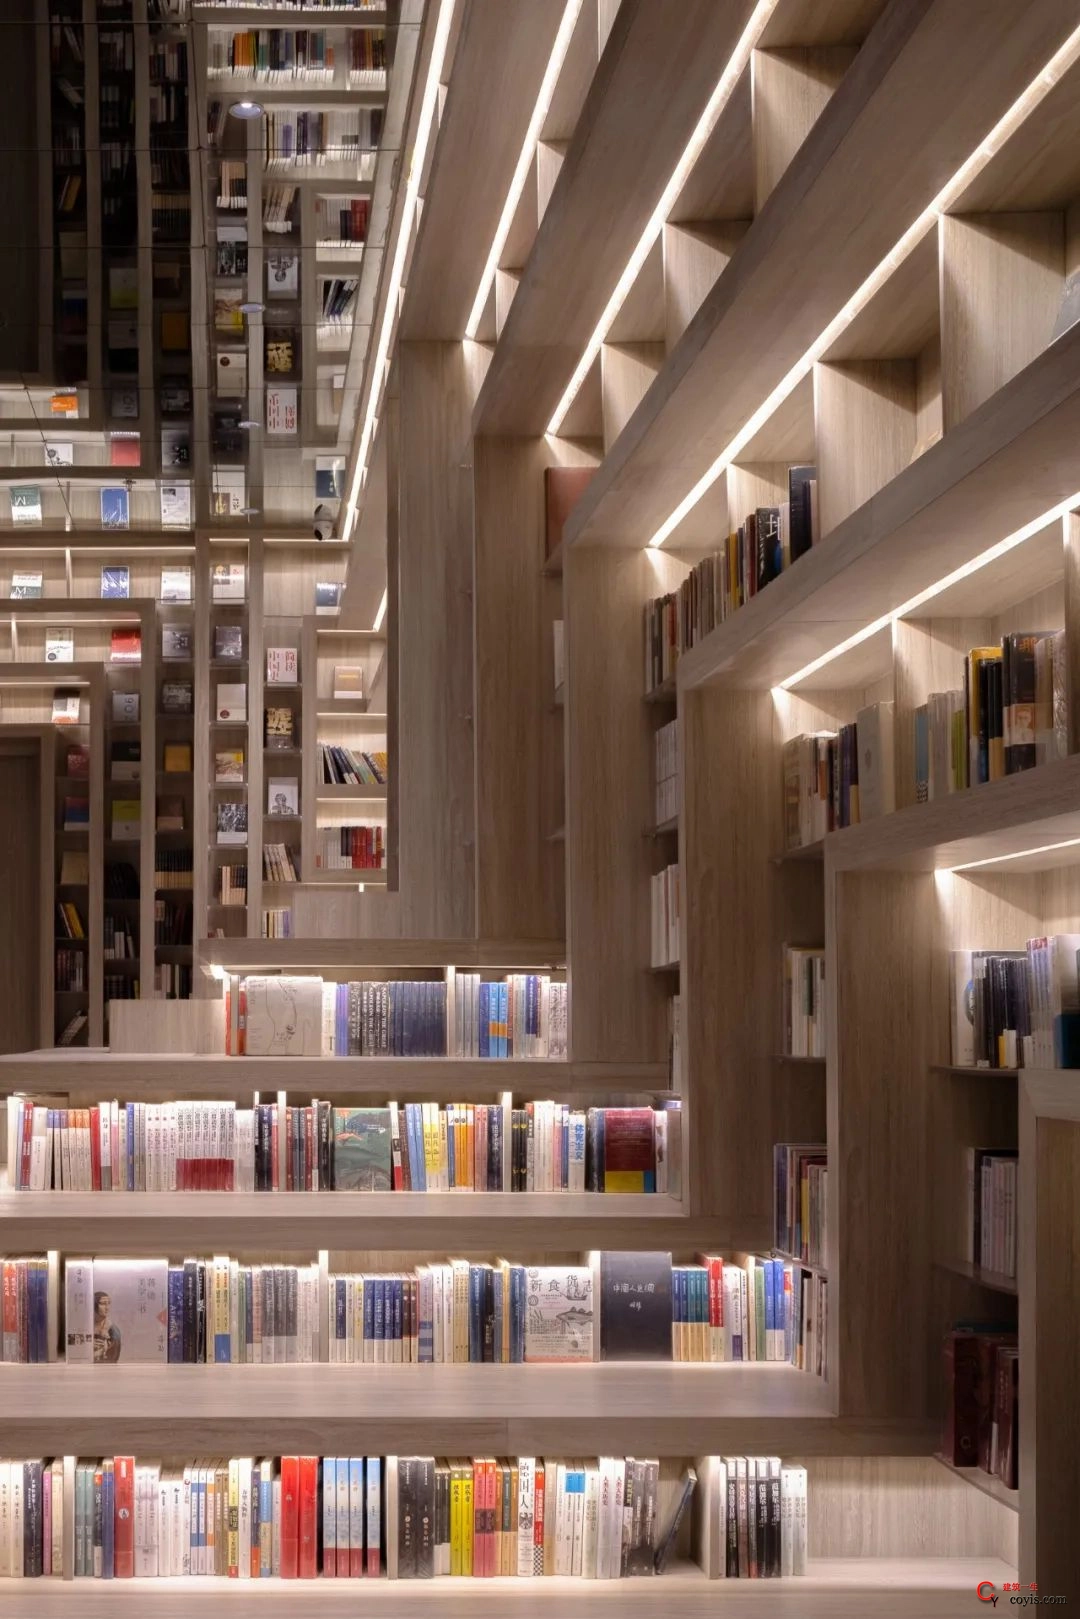 斐波影院X鐘書閣丨一家藏在書店里的電影院，打造出了文藝愛好者的天堂 / 唯想國際